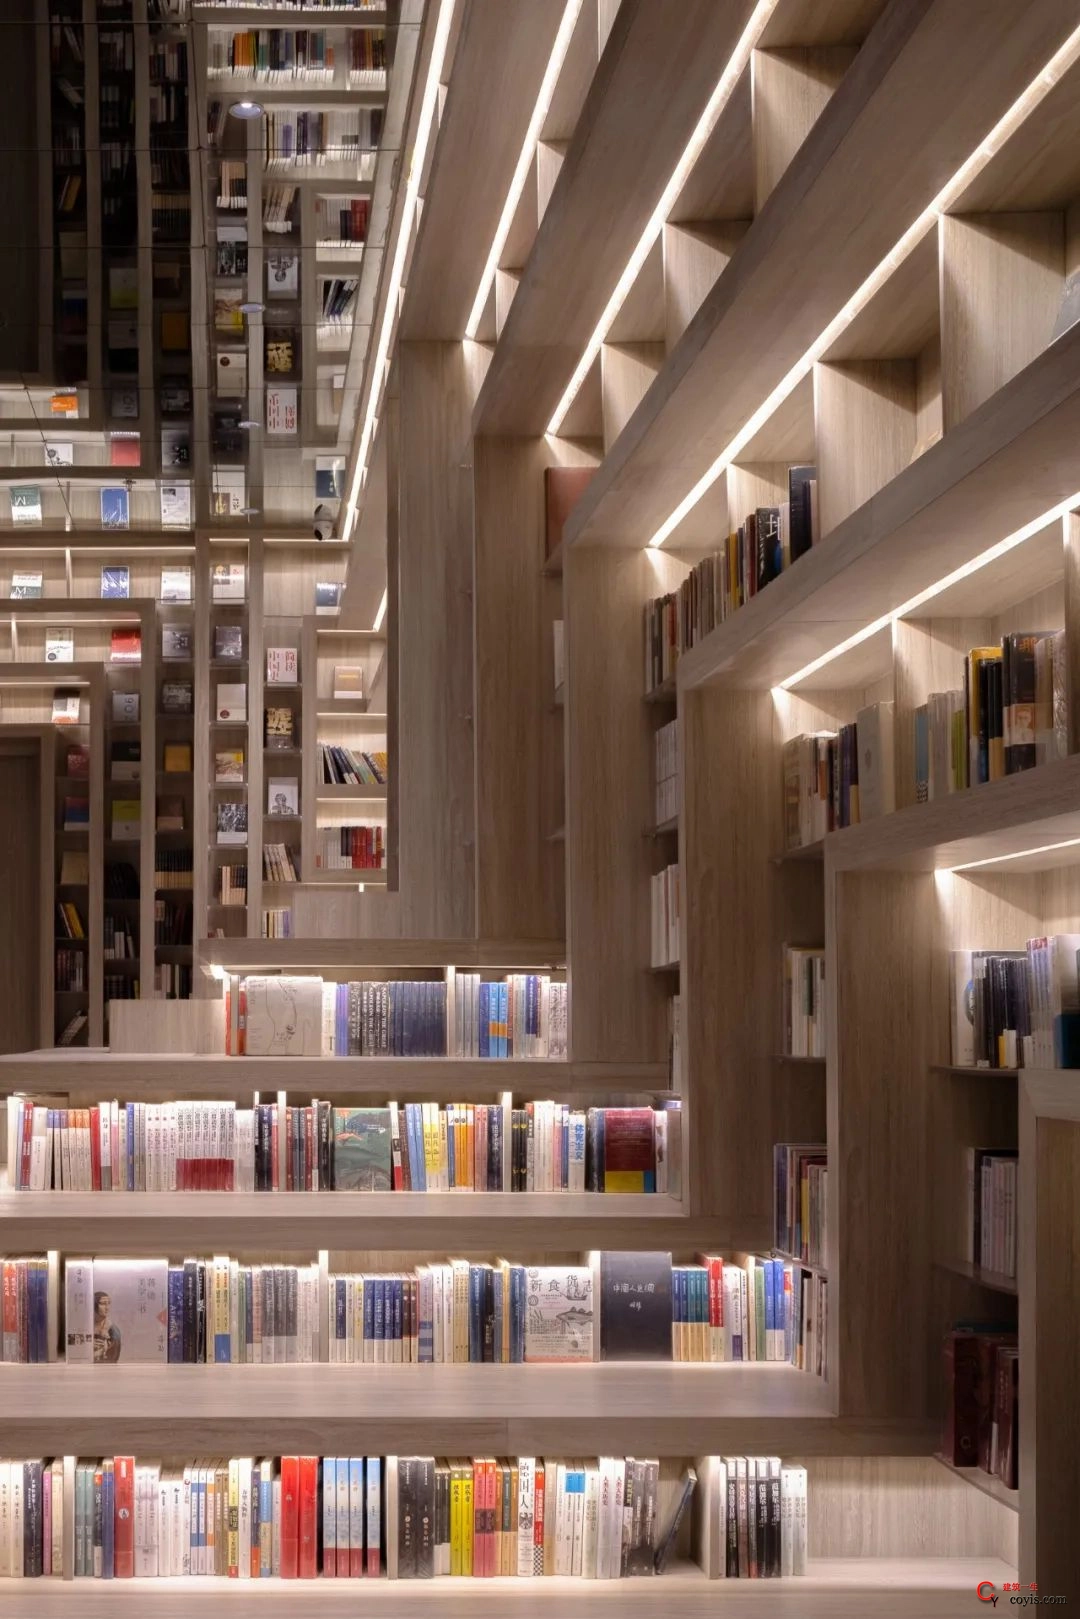 斐波影院X鐘書閣丨一家藏在書店里的電影院，打造出了文藝愛好者的天堂 / 唯想國際